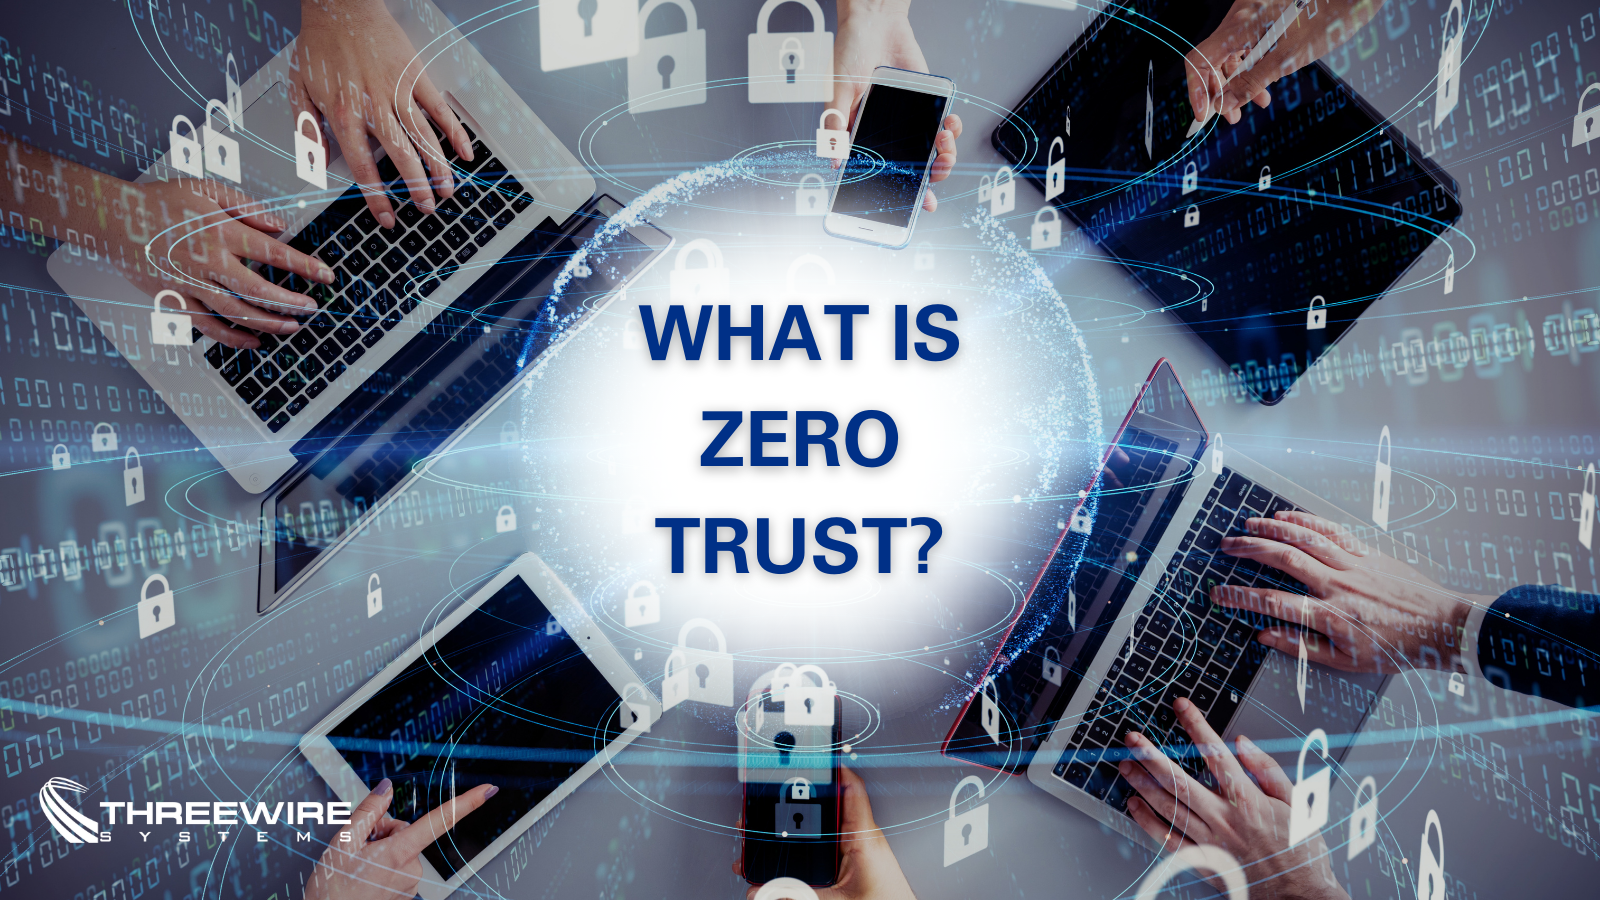 Zeroing in on Zero Trust!